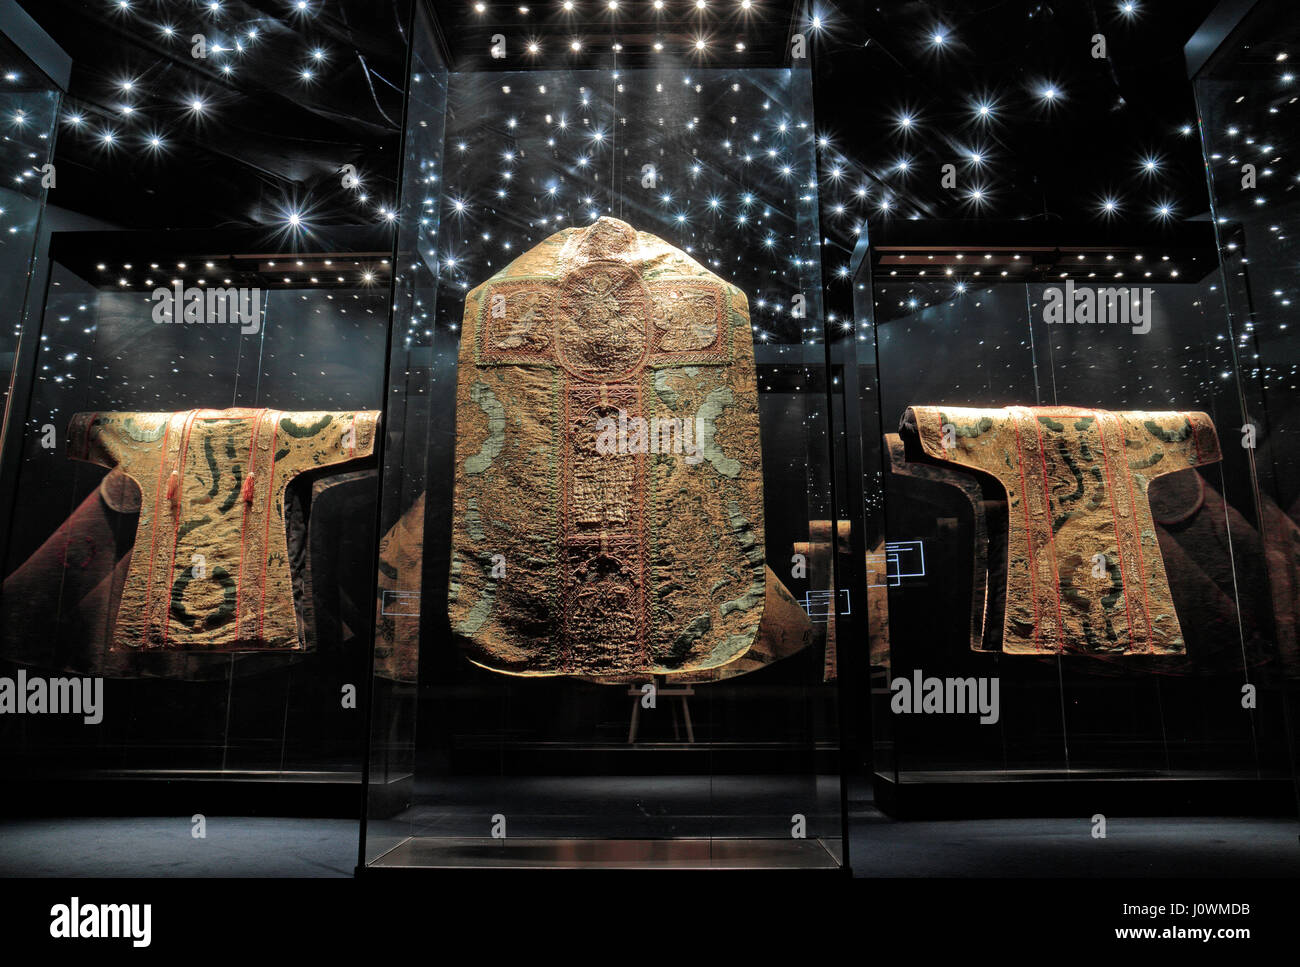 Museo medieval ropa fotografías e imágenes de alta resolución - Alamy